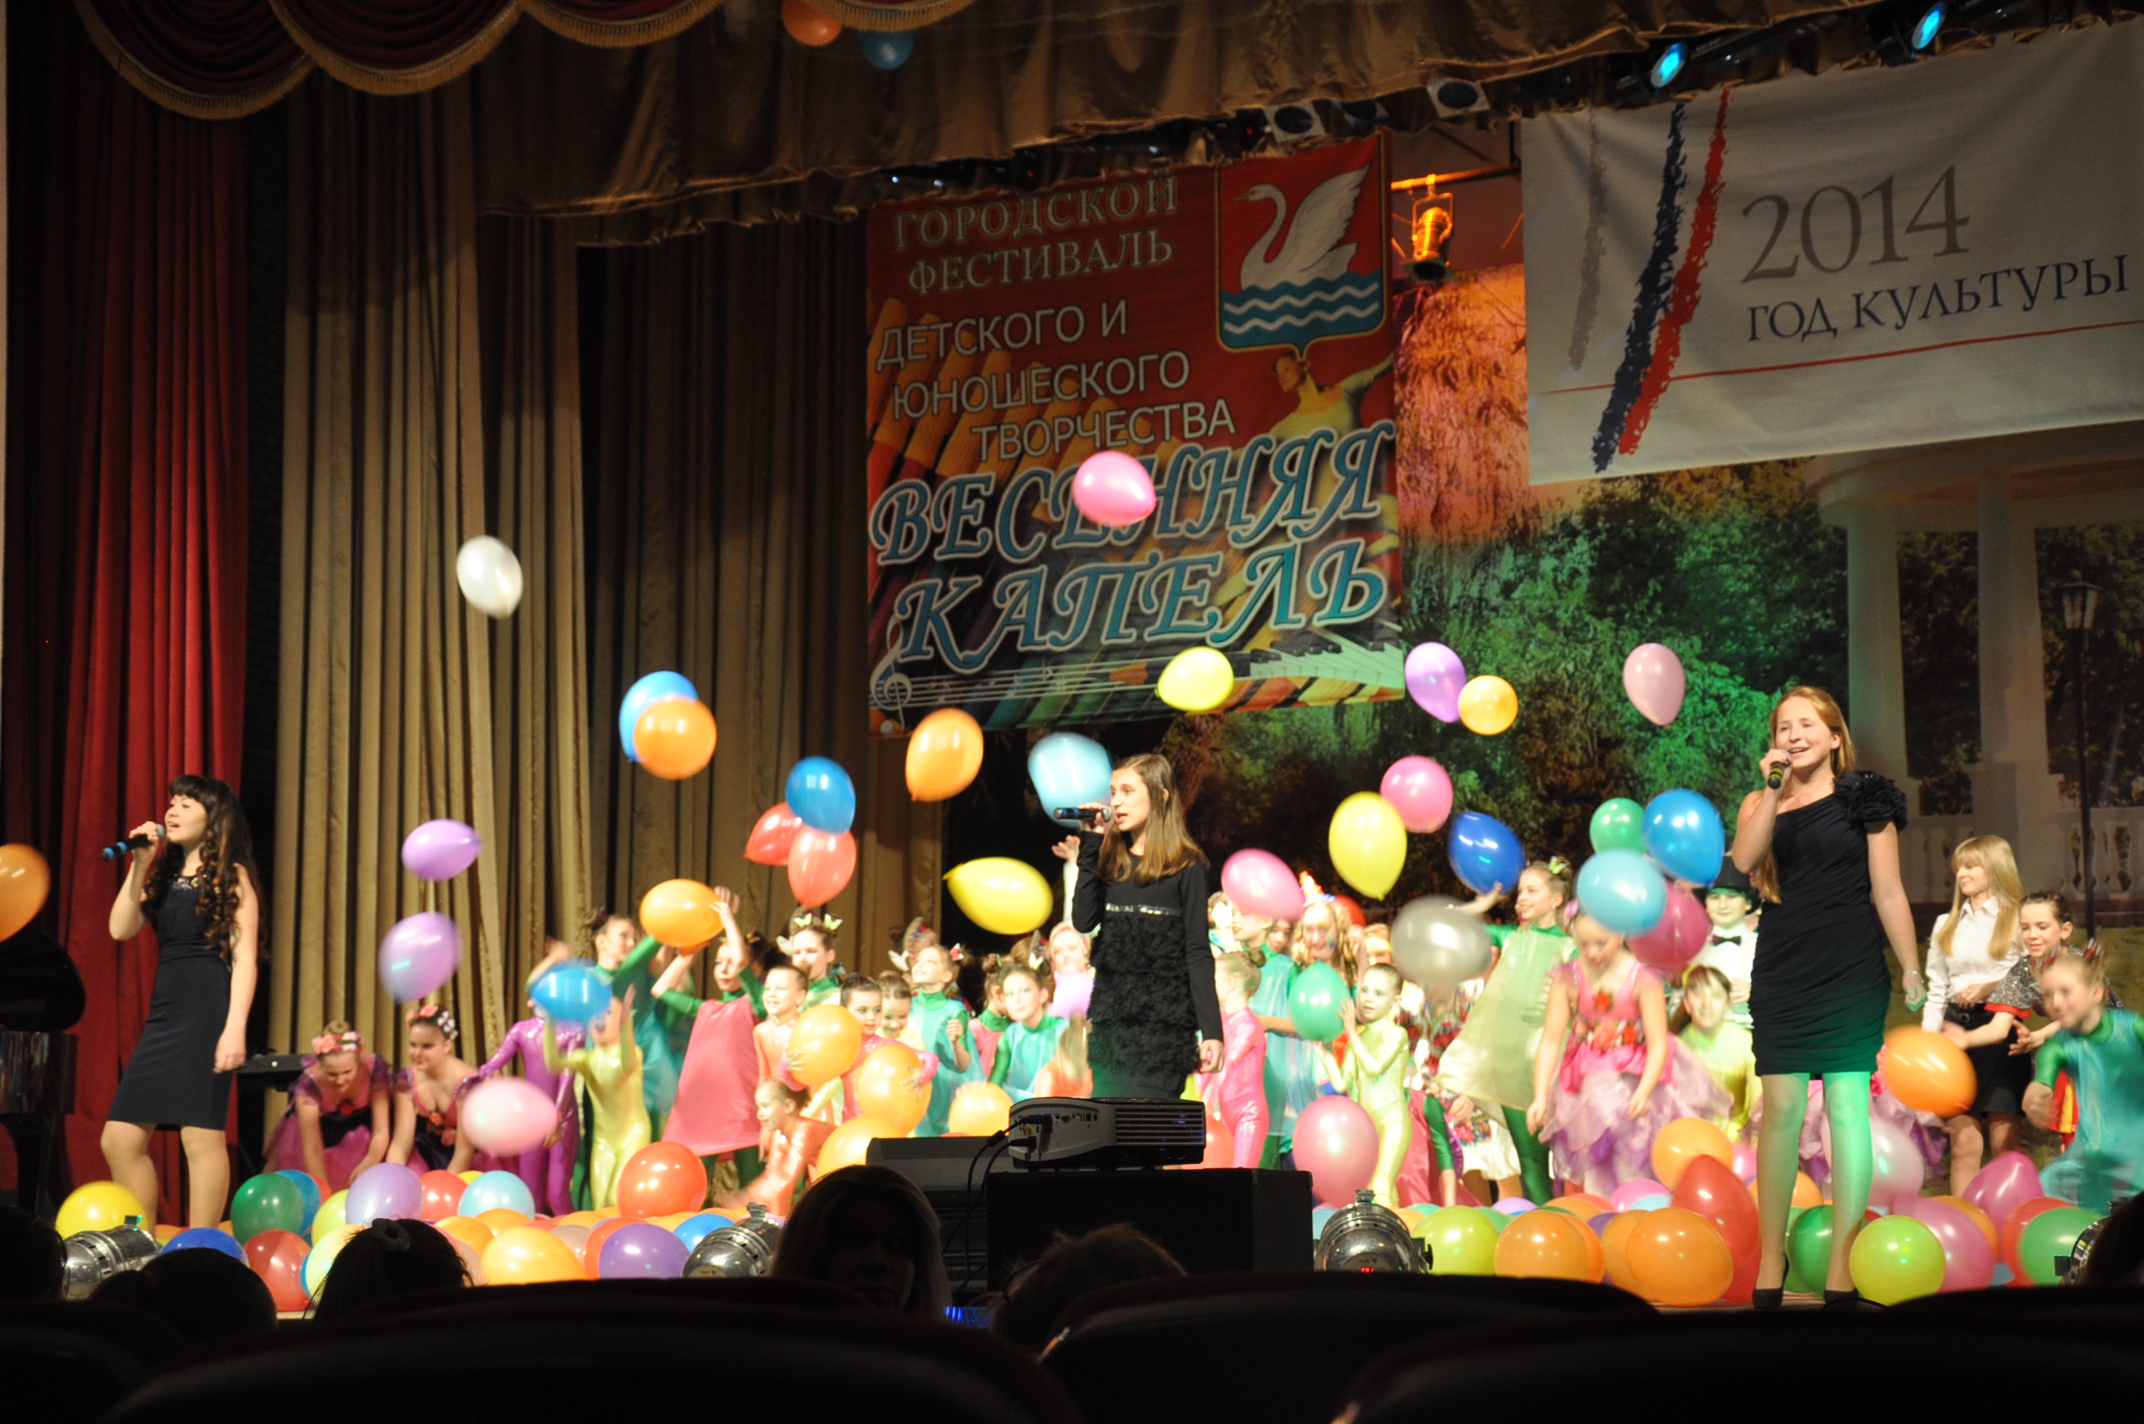 НФПП поддержал фестиваль детского и юношеского творчества «Весенняя капель» и наградил победителя в номинации «Вокал»